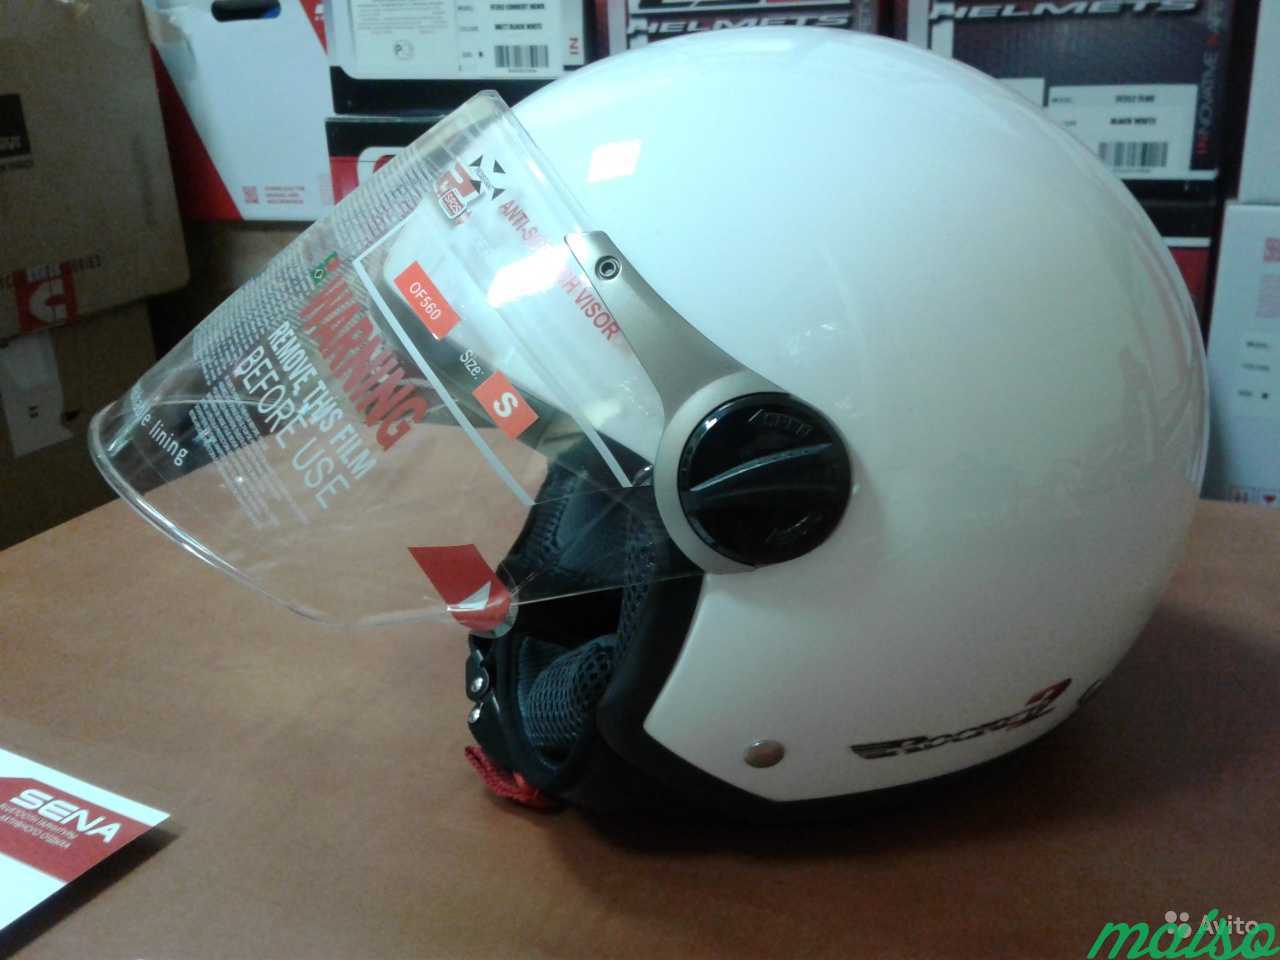 Шлем открытый LS2 OF560 (Испания) безопасность 4* в Санкт-Петербурге. Фото 2